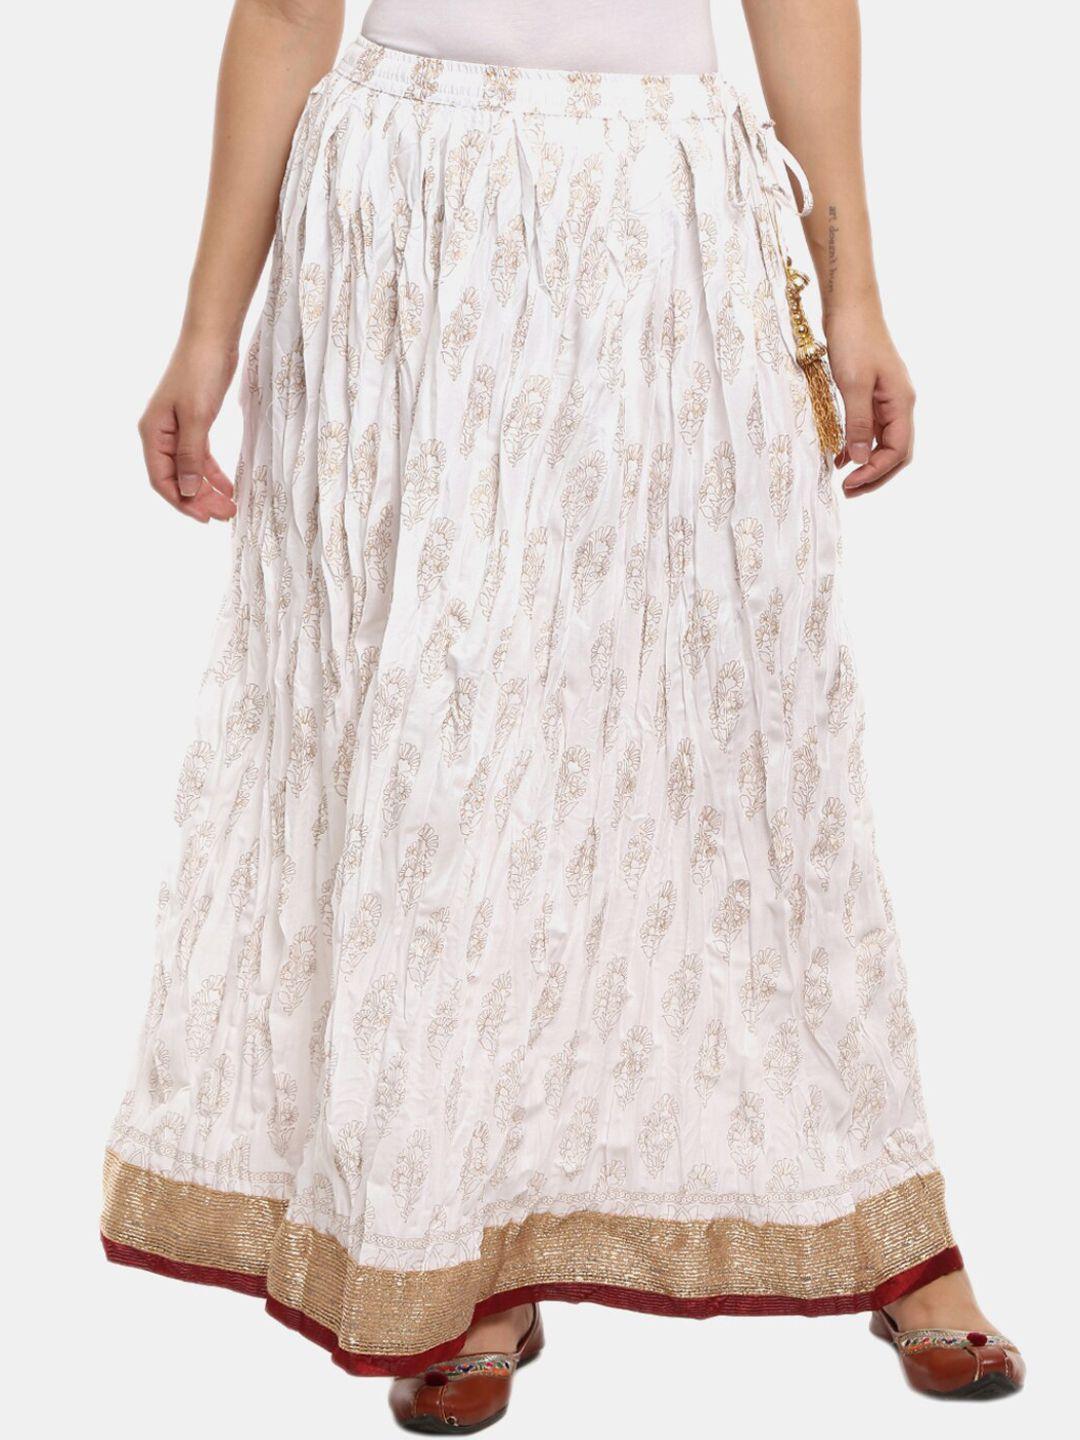 v-mart women white printed flared maxi skirt